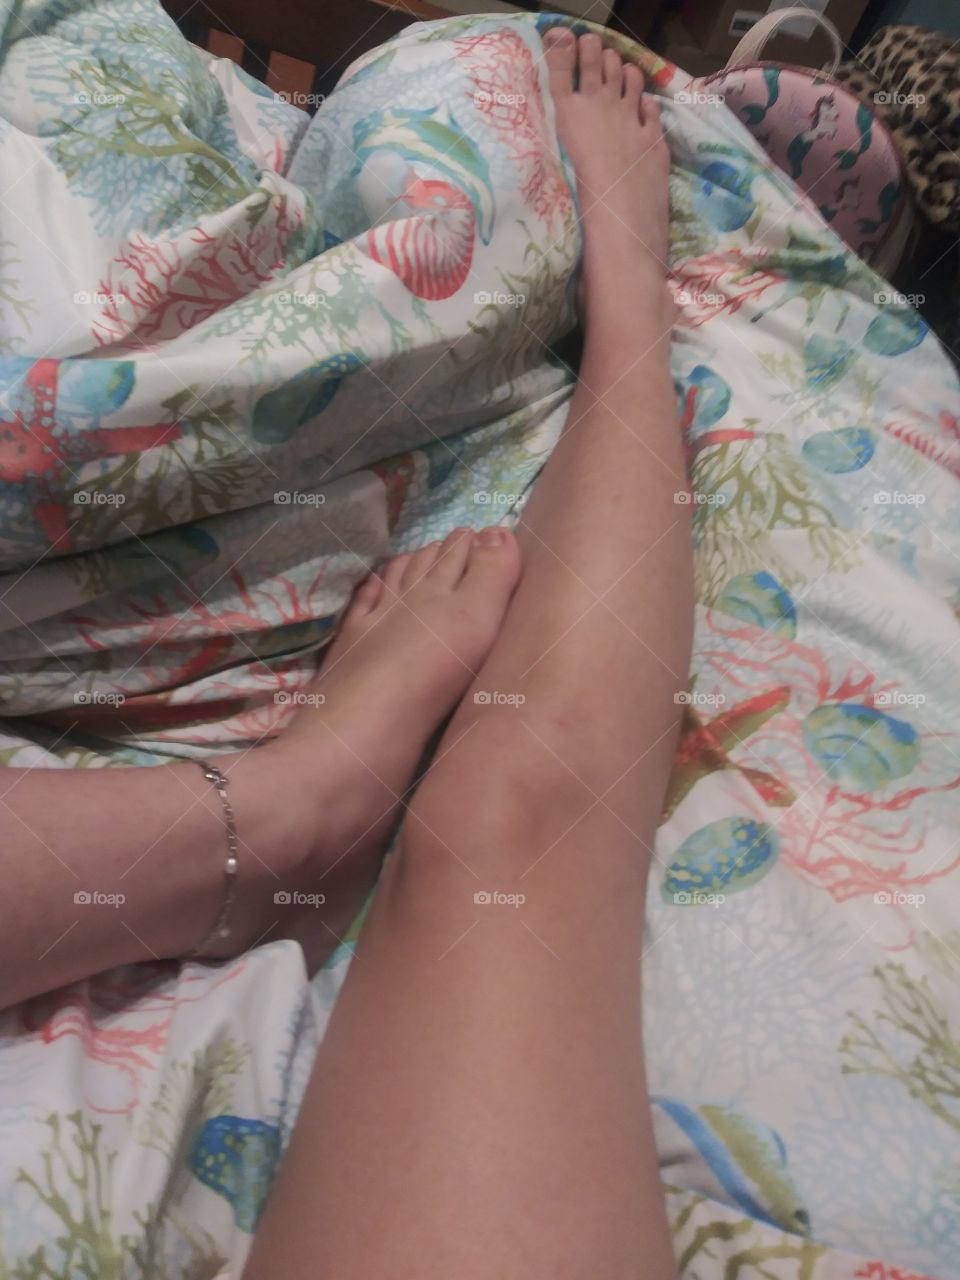 Feet after a good soak